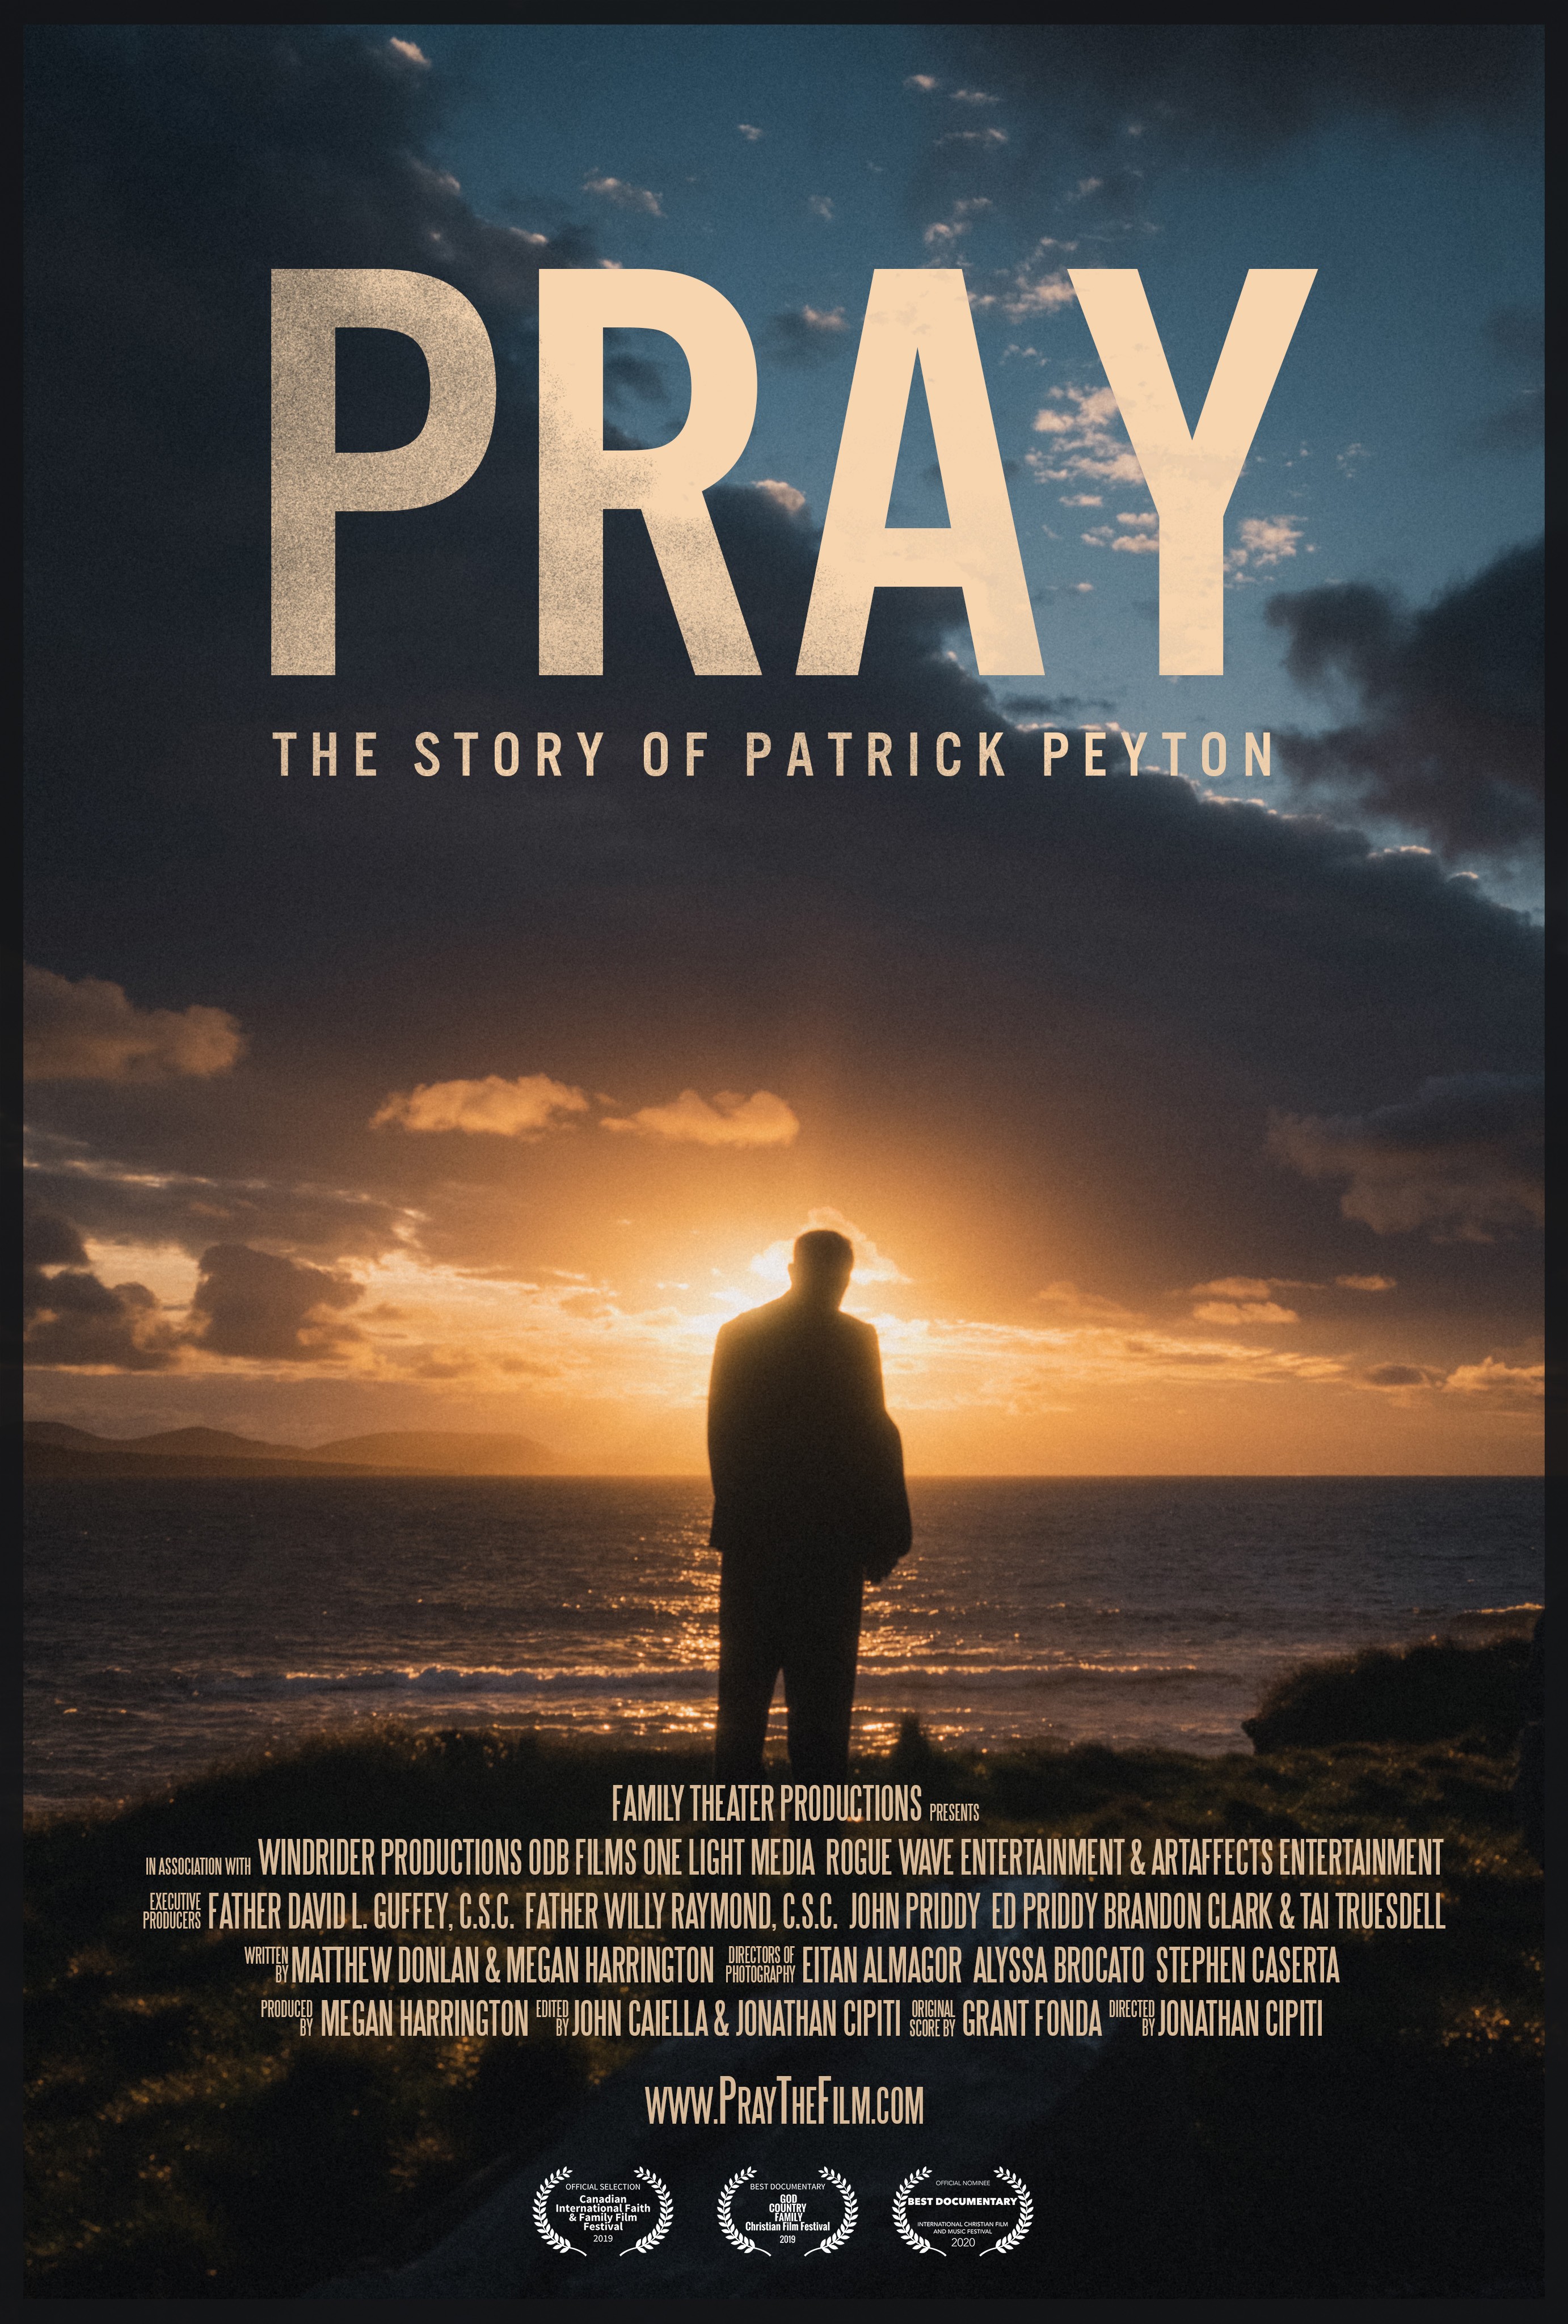 "Pray: The Story of Patrick Peyton photo 17"